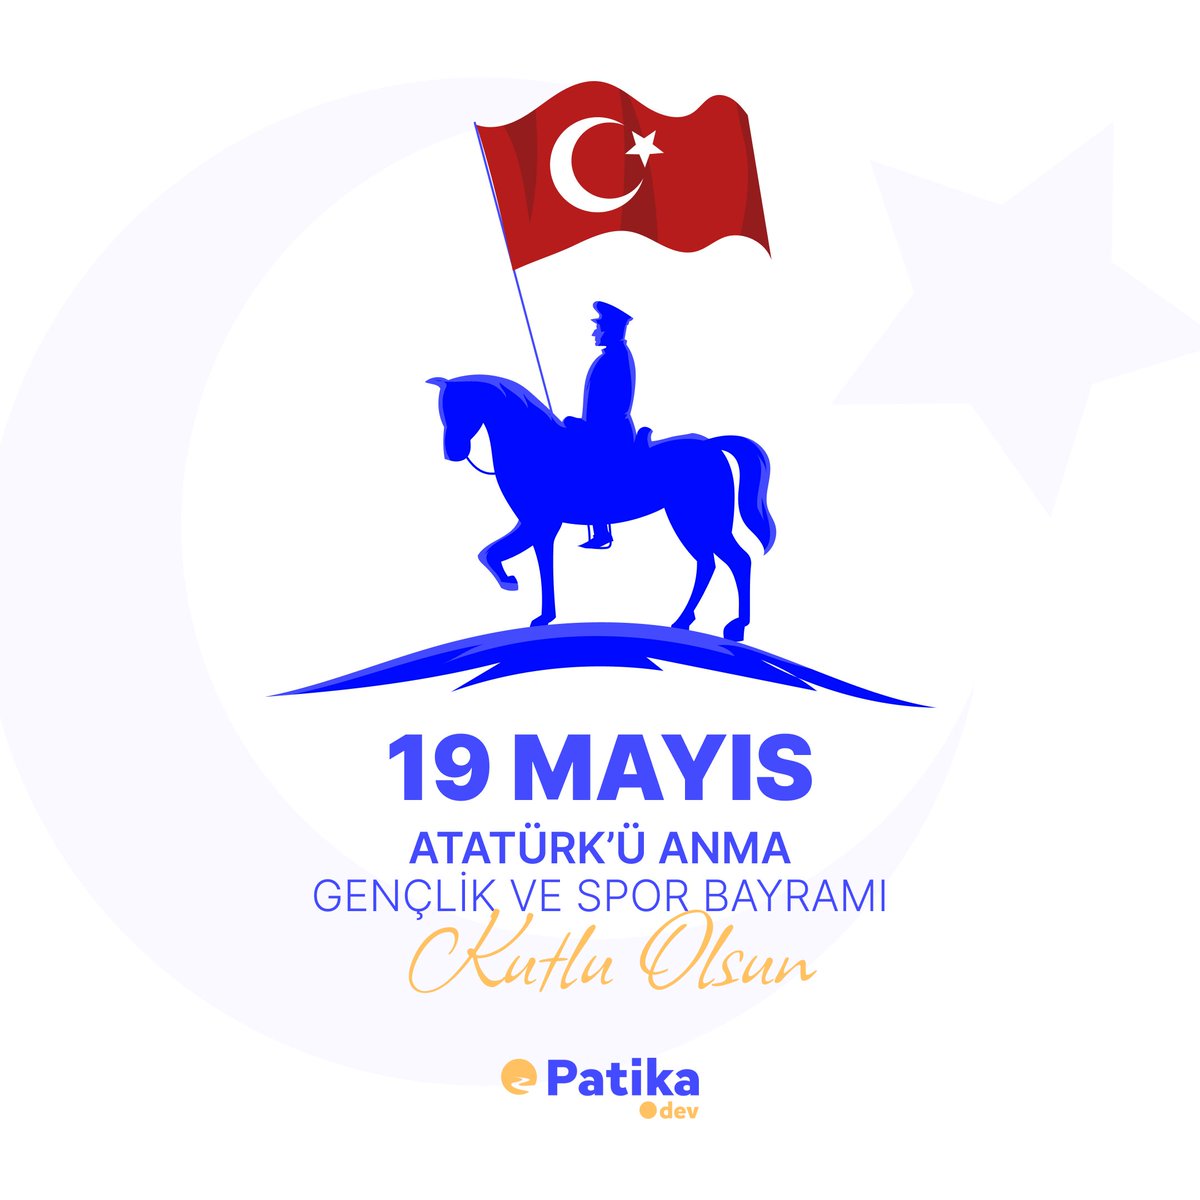 19 Mayıs Atatürk'ü Anma, Gençlik ve Spor Bayramı kutlu olsun! 🇹🇷 Her 19 Mayıs'ta yeniden filizlenen umutlarımız gibi, gençlerimizin azmiyle doluyor yüreğimiz. 🎉 Mustafa Kemal Atatürk'ün Samsun'a çıkarak başlattığı bağımsızlık mücadelemizin yıl dönümünde, herkesin 19 Mayıs